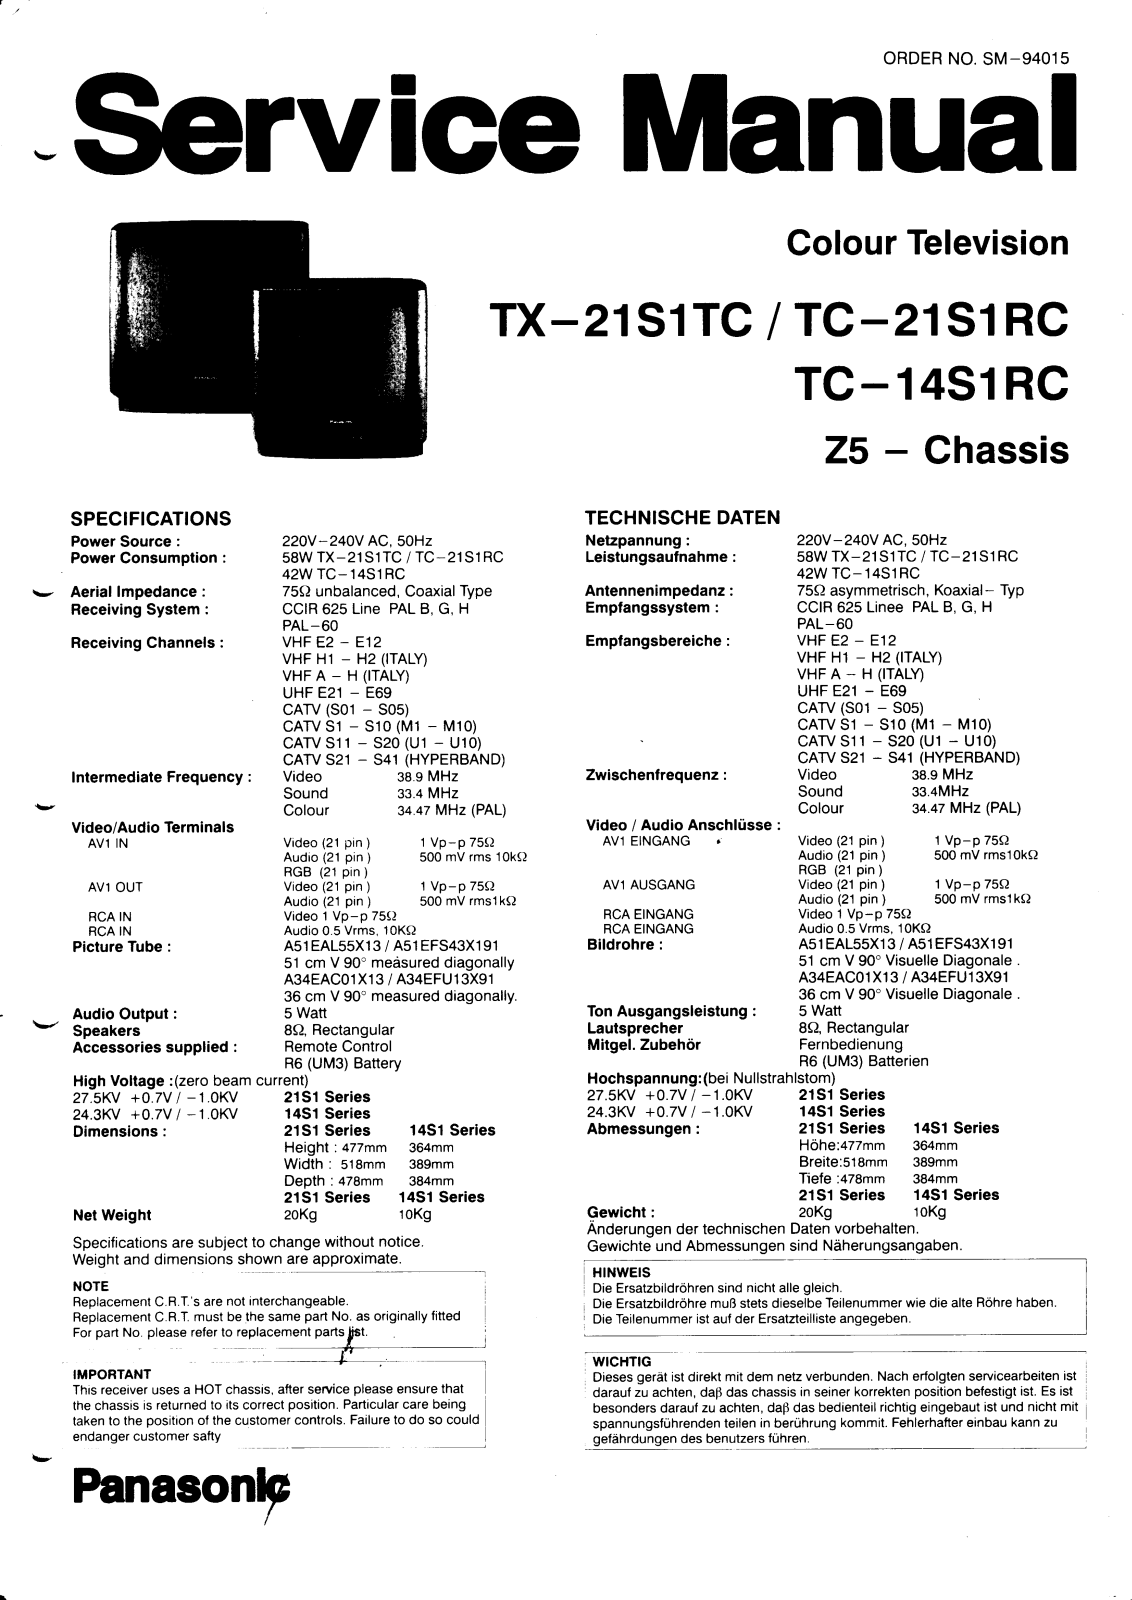 panasonic tx-21s1tc, tc-21s1rc, tc-14s1rc Service Manual